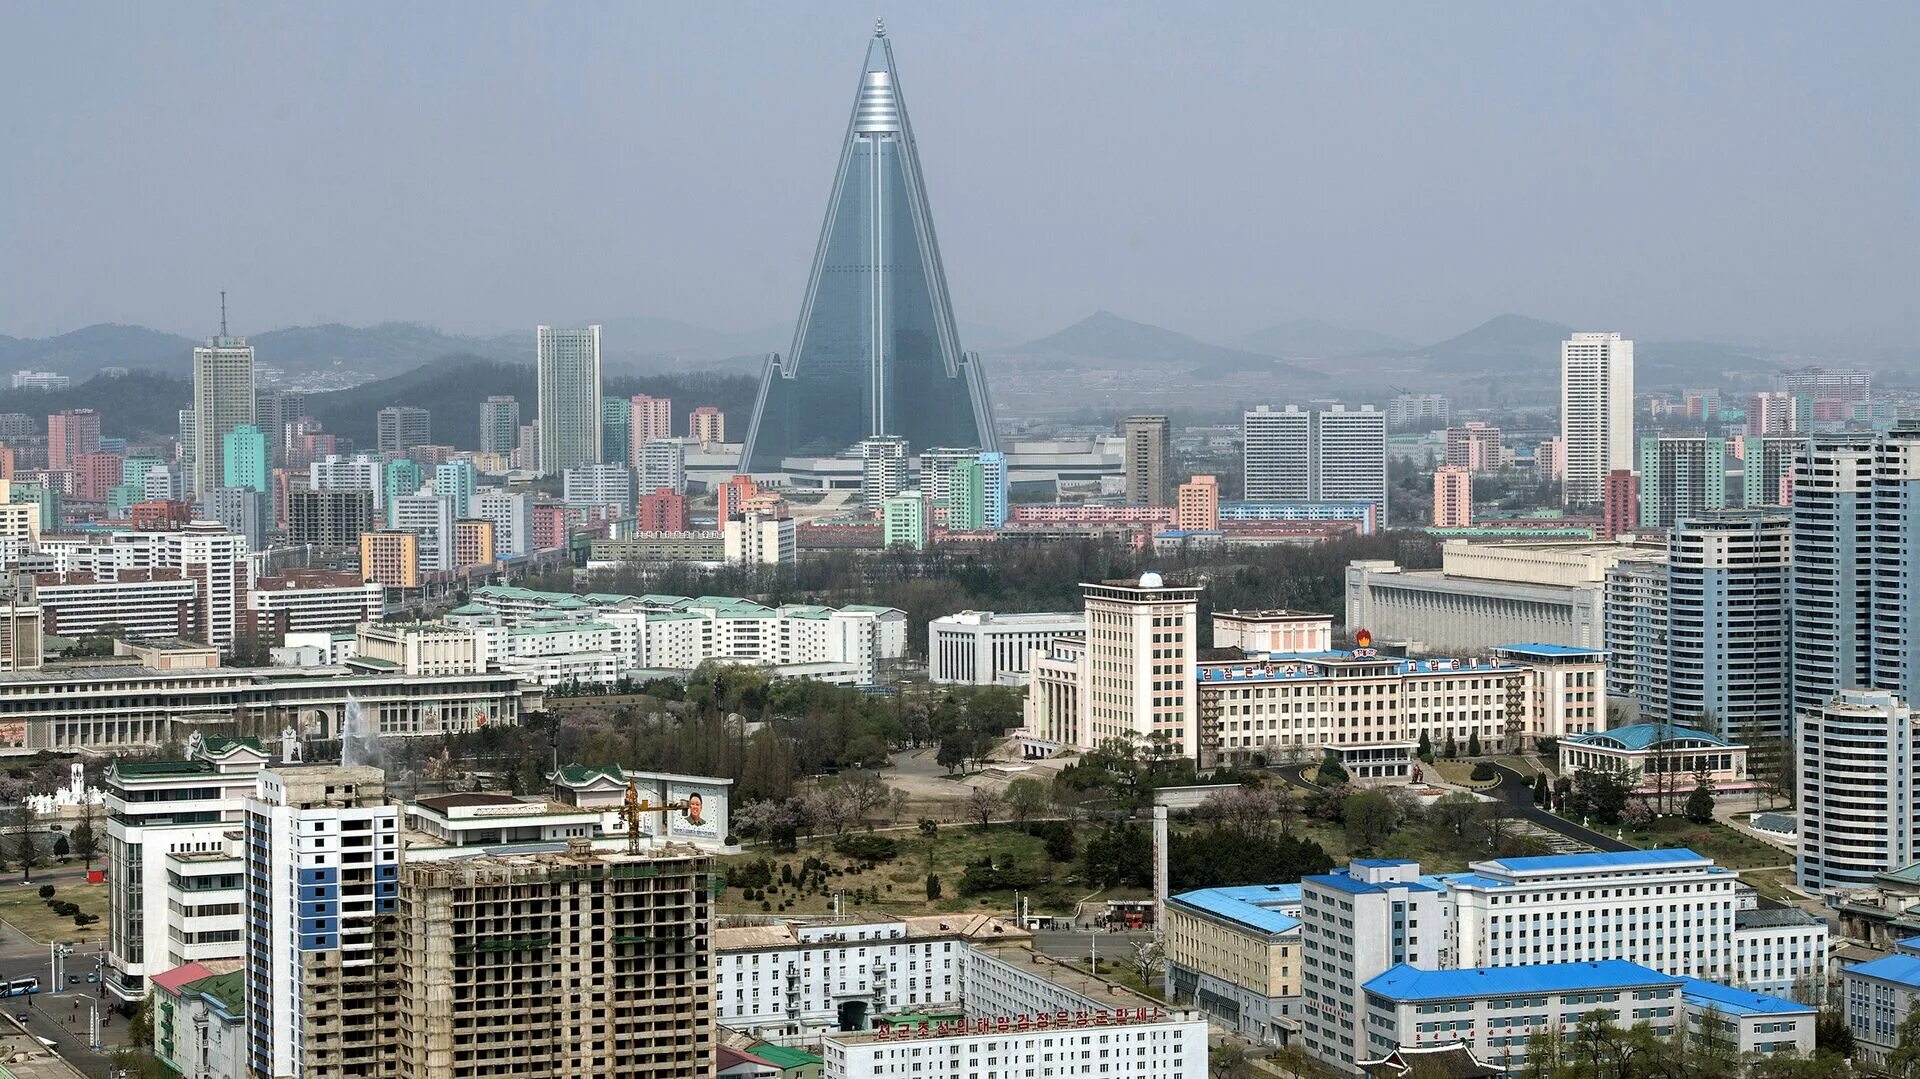 Столица северной кореи название столицы. Северная Корея Пхеньян. Северная Корея столица Пхеньян. КНДР столица Пхеньян. Ворота Тэдон Пхеньян.